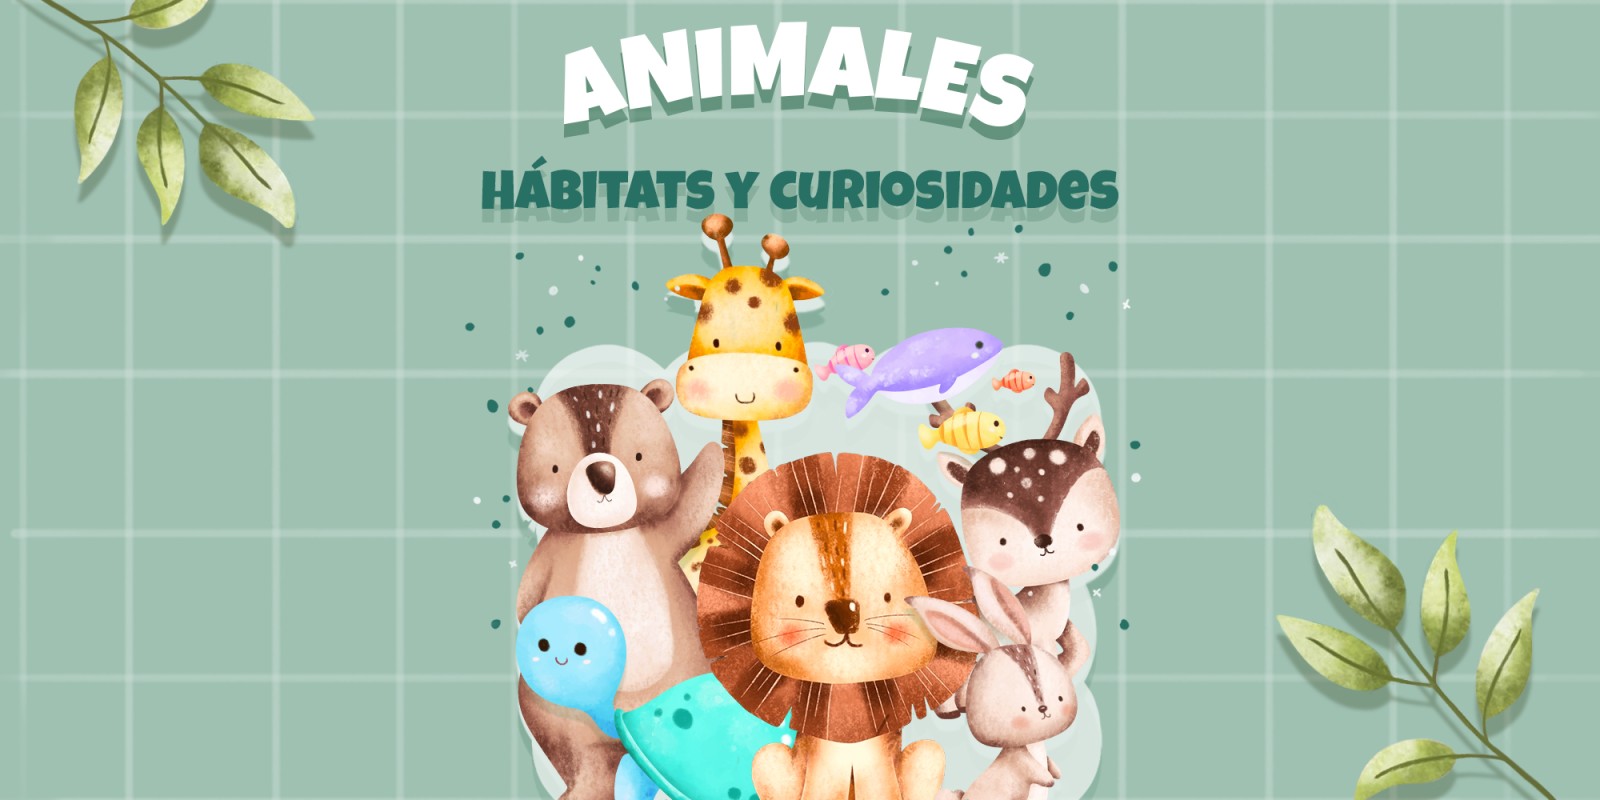 Animales - Hábitats y curiosidades